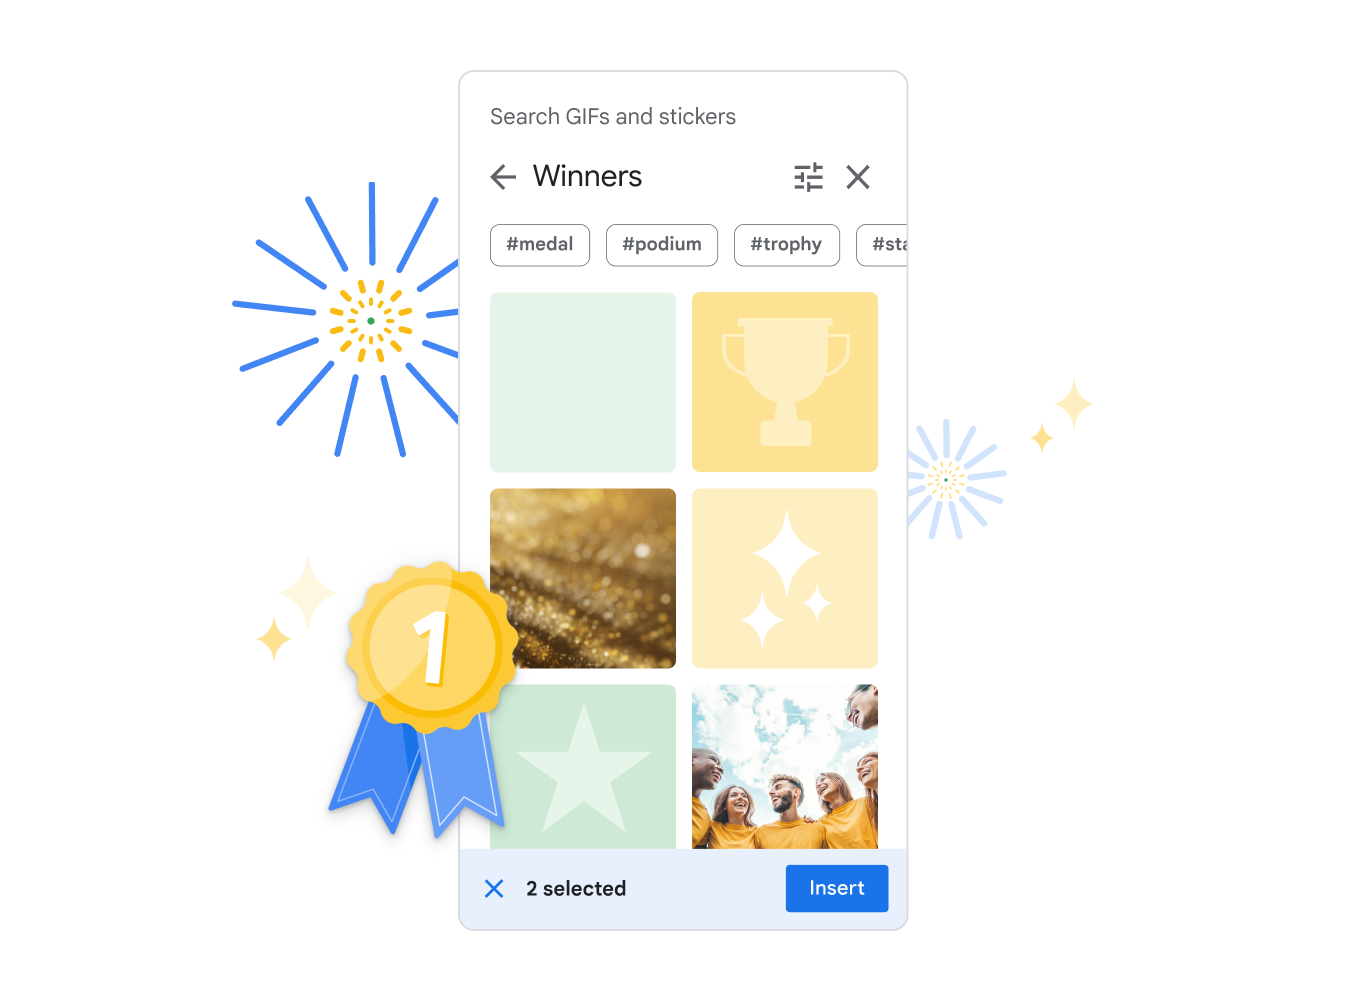 Modulen for GIF-er og klistremerker i Google Presentasjoner, som viser et utvalg av klistremerker under temaet «Winners» (vinnere).